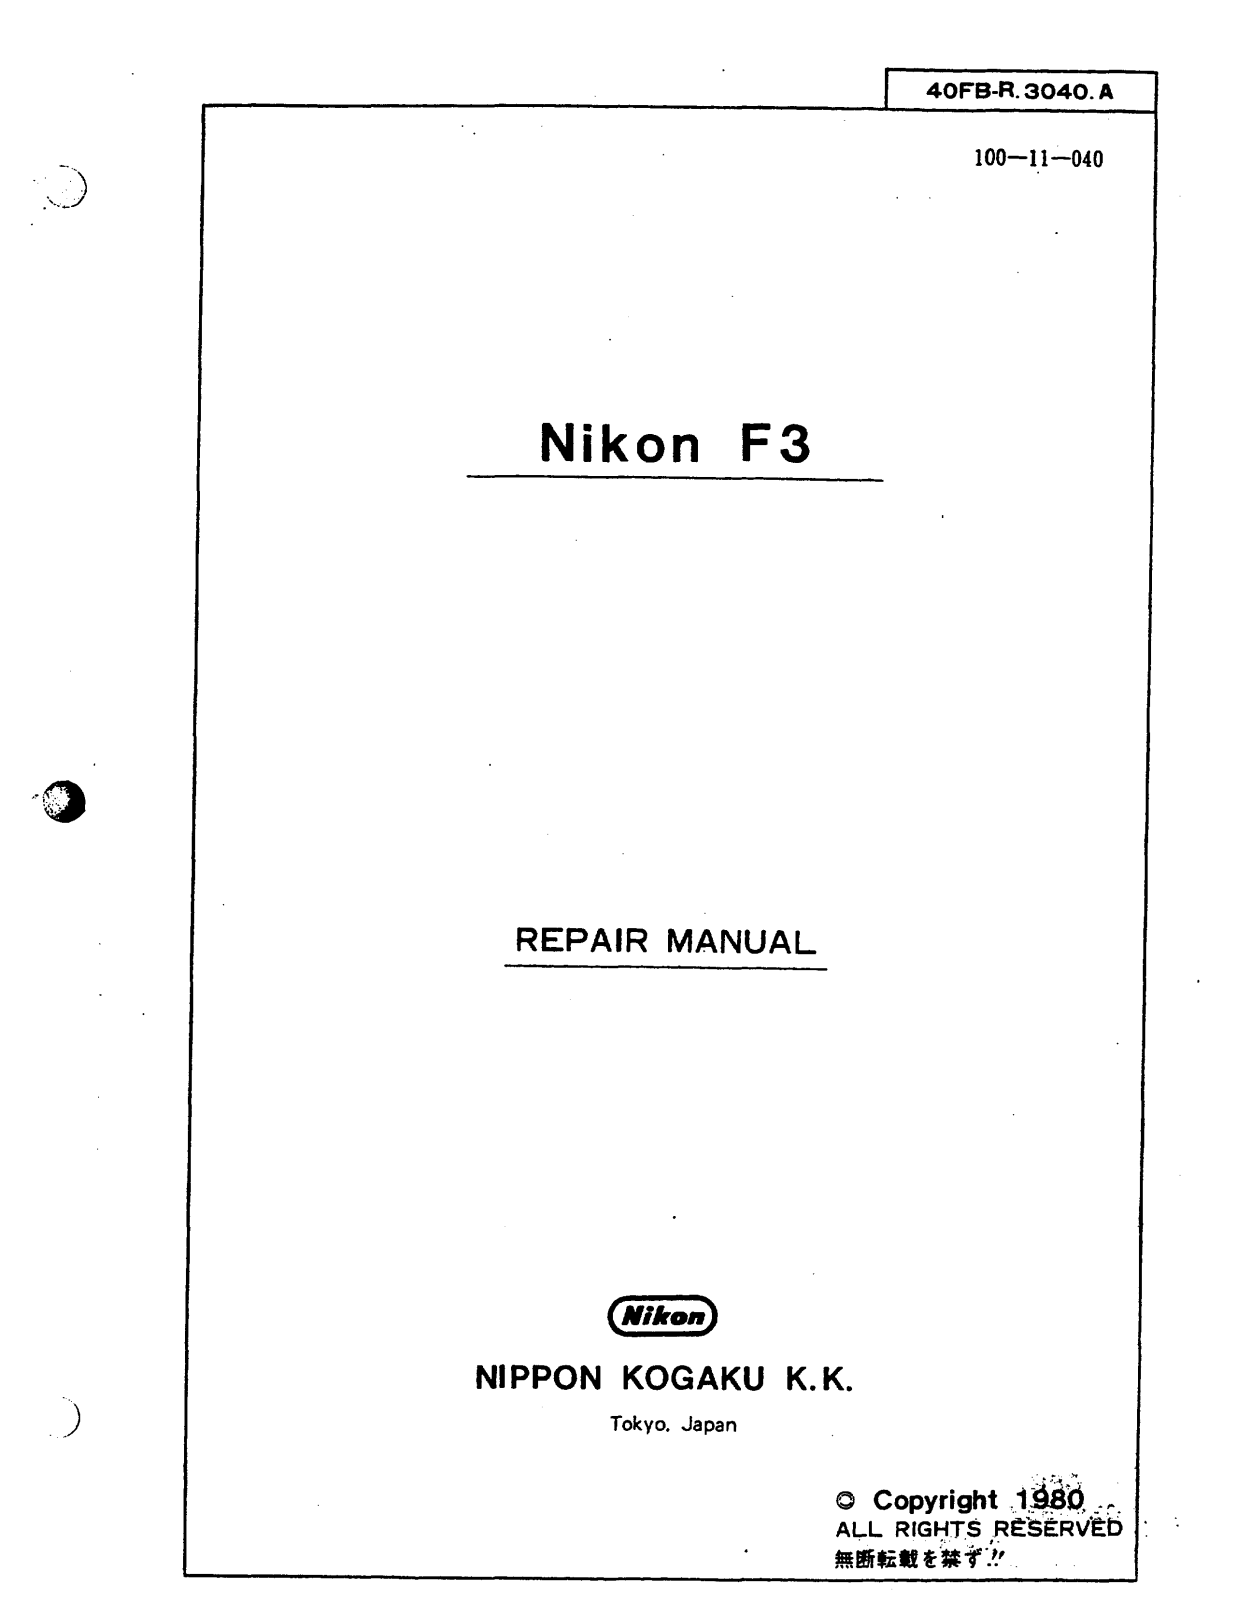 Nikon F3 Manual Repair